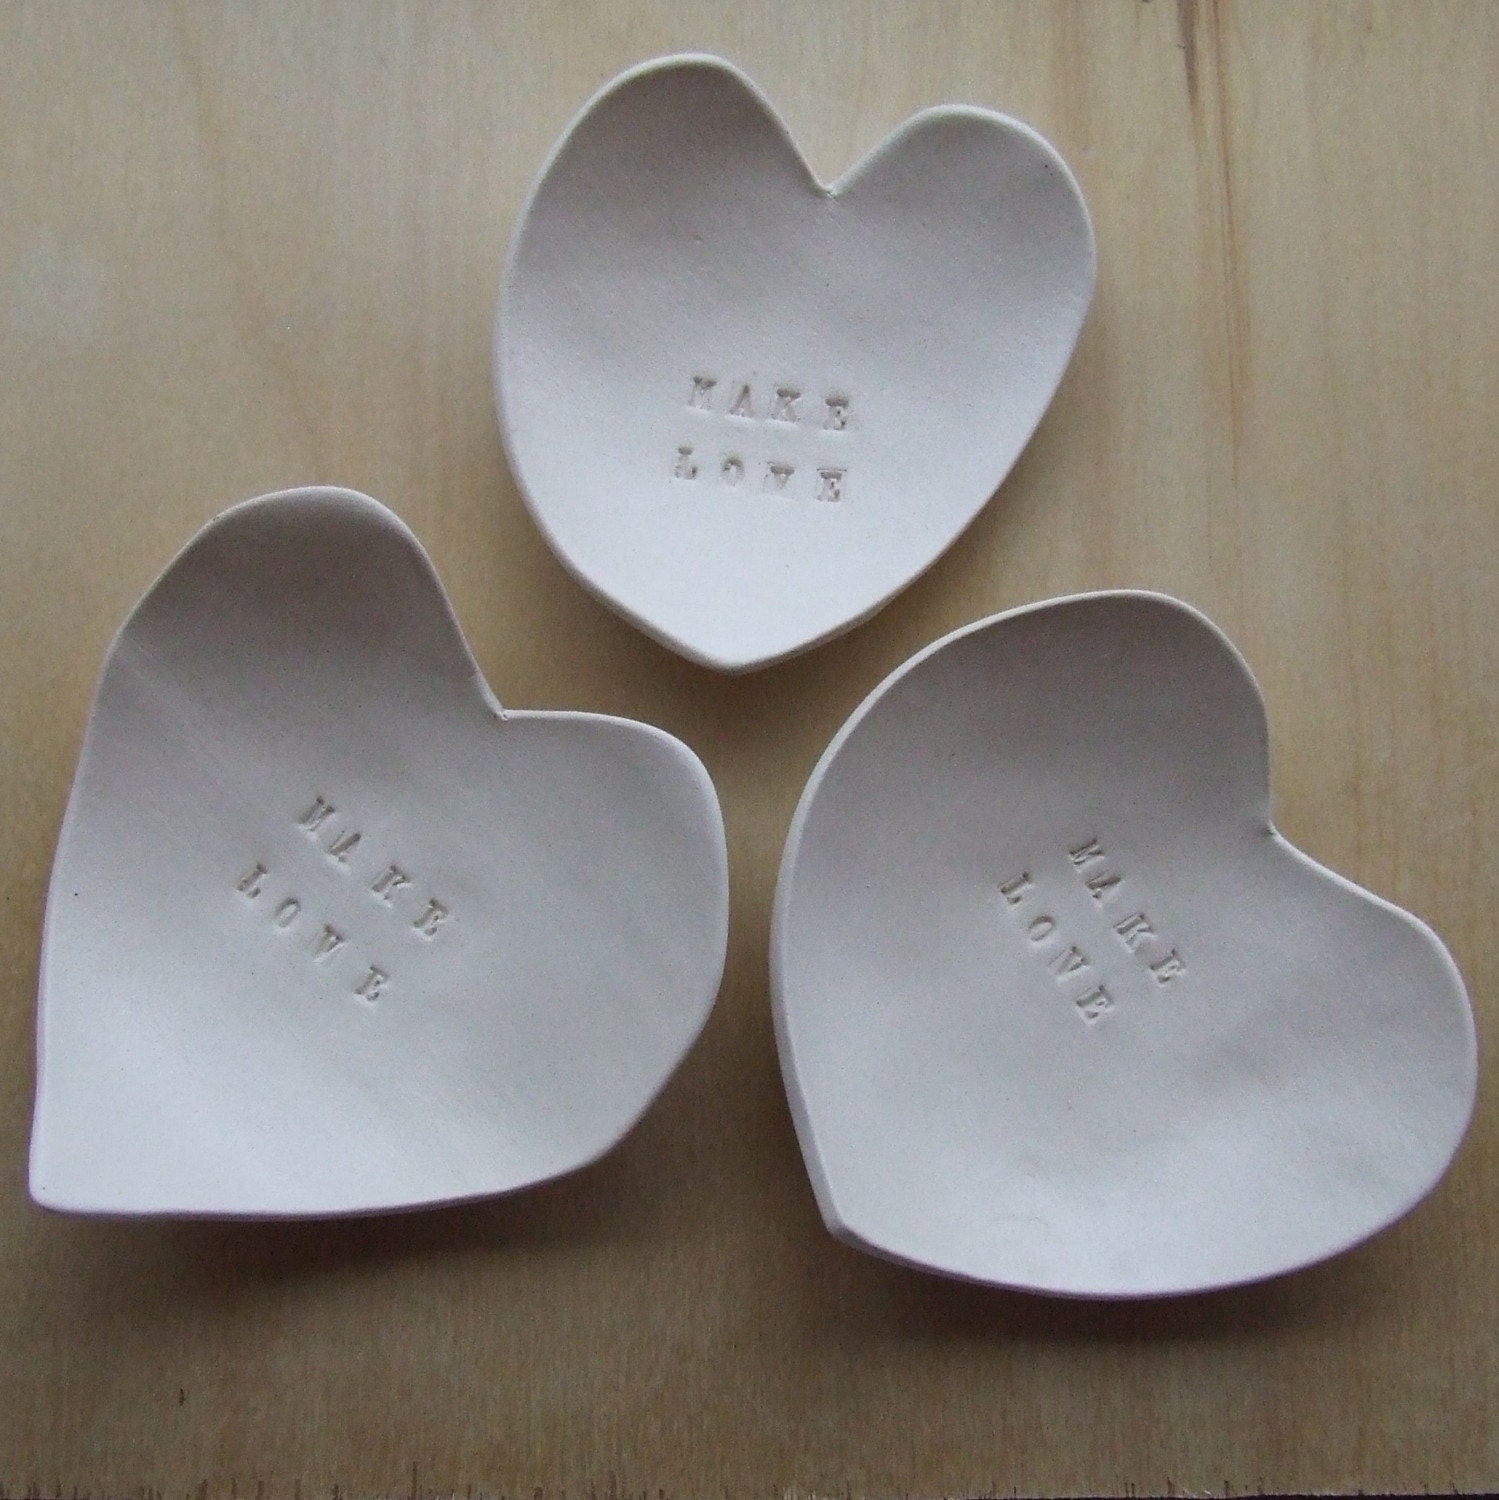 MAKE LOVE heart shaped tiny text bowl